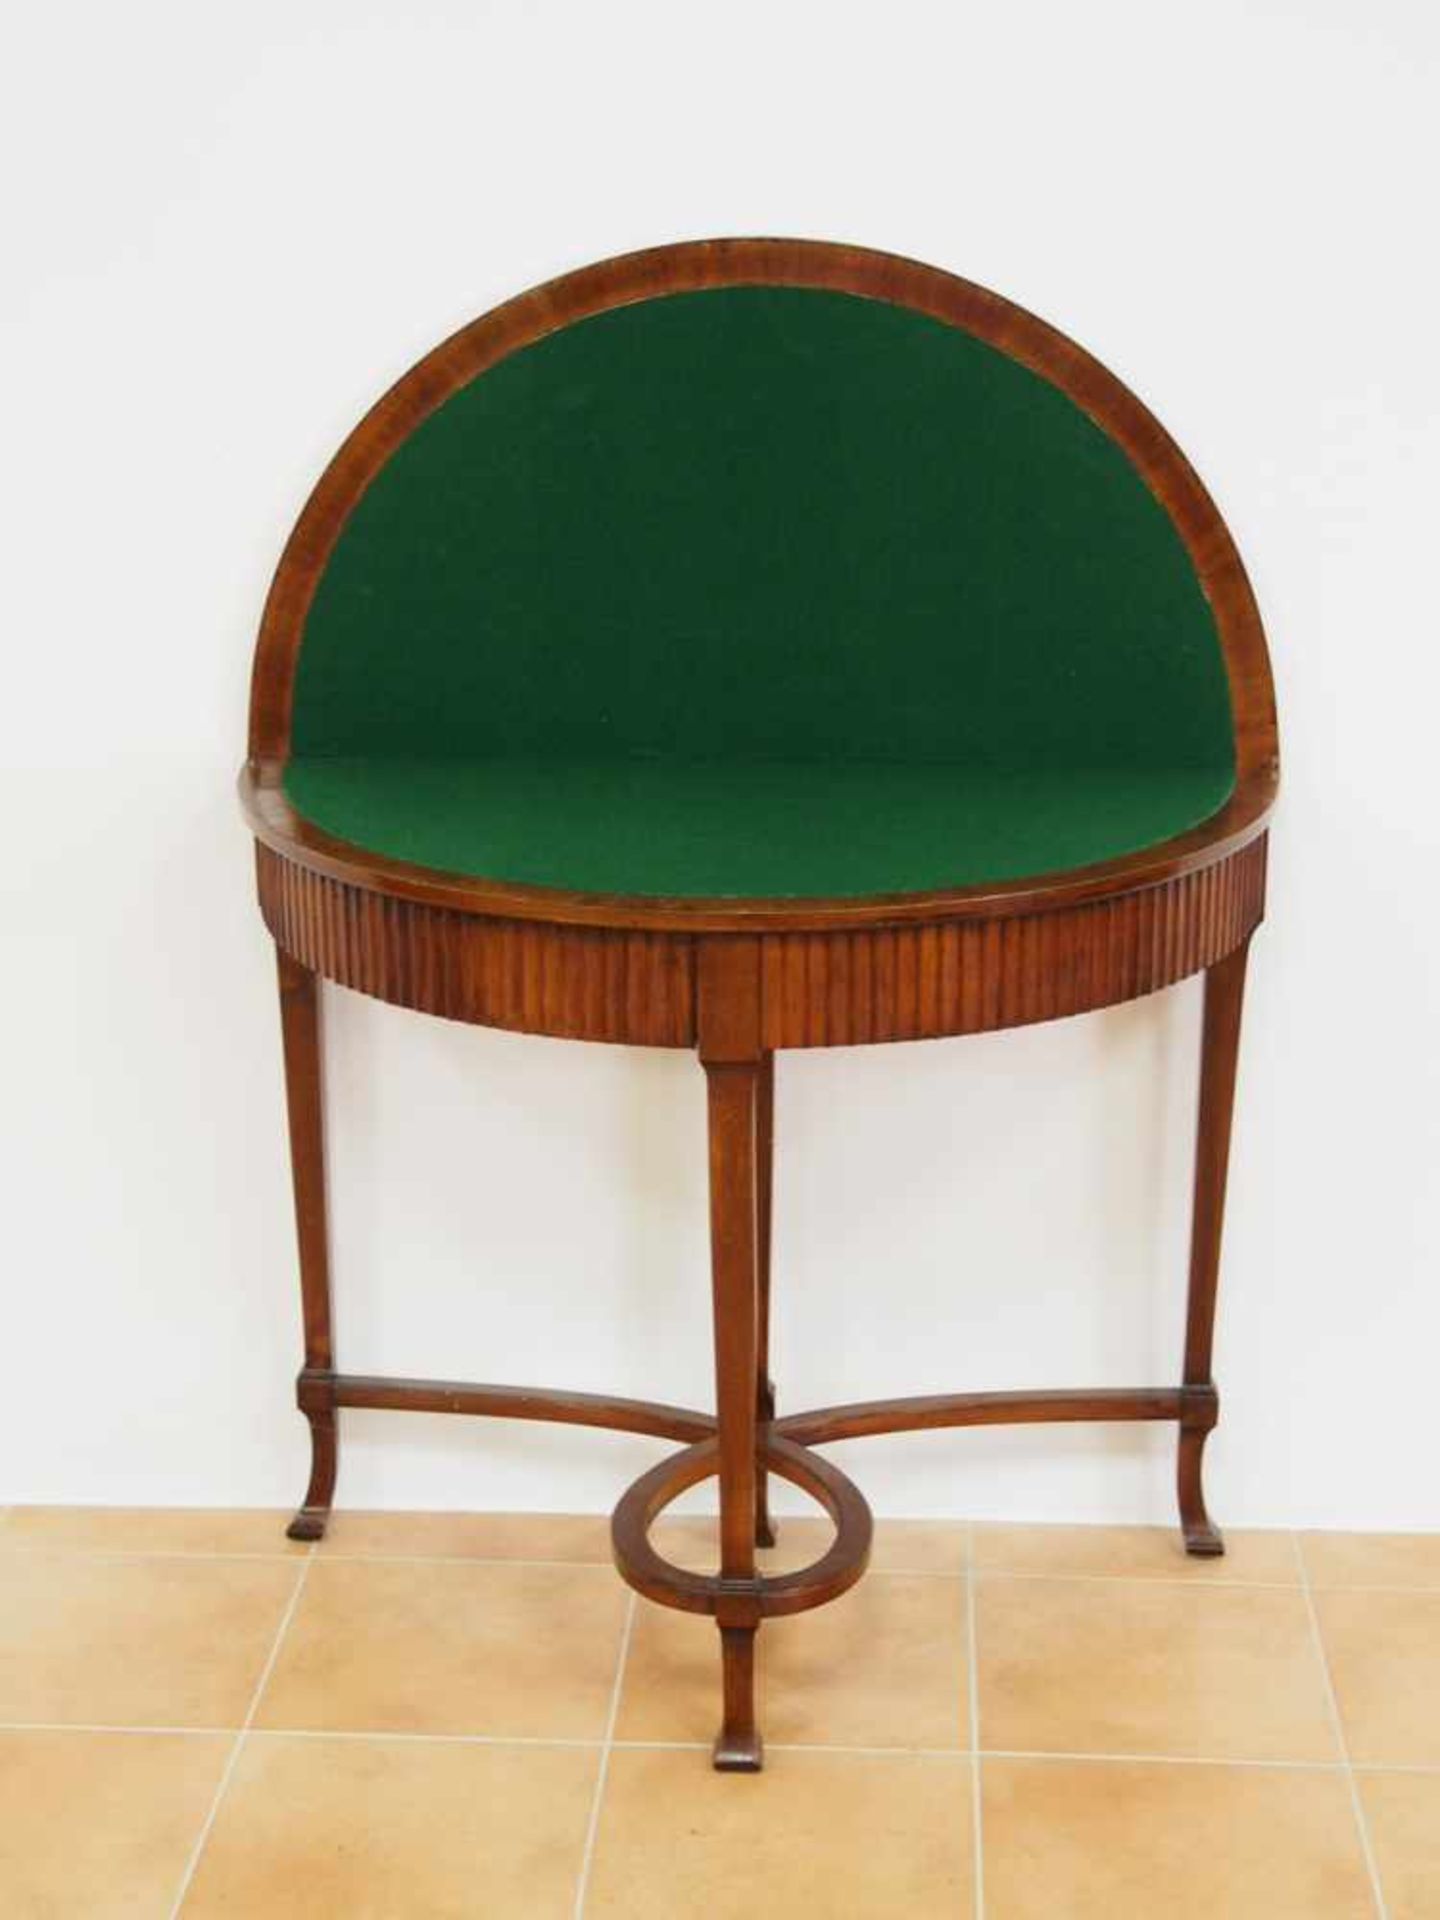 SpieltischMahagoni, Filzbezug, Höhe 78 cm, Durchmesser 91 cm, Deutsch, um 1900- - -25.00 % buyer's - Image 2 of 3